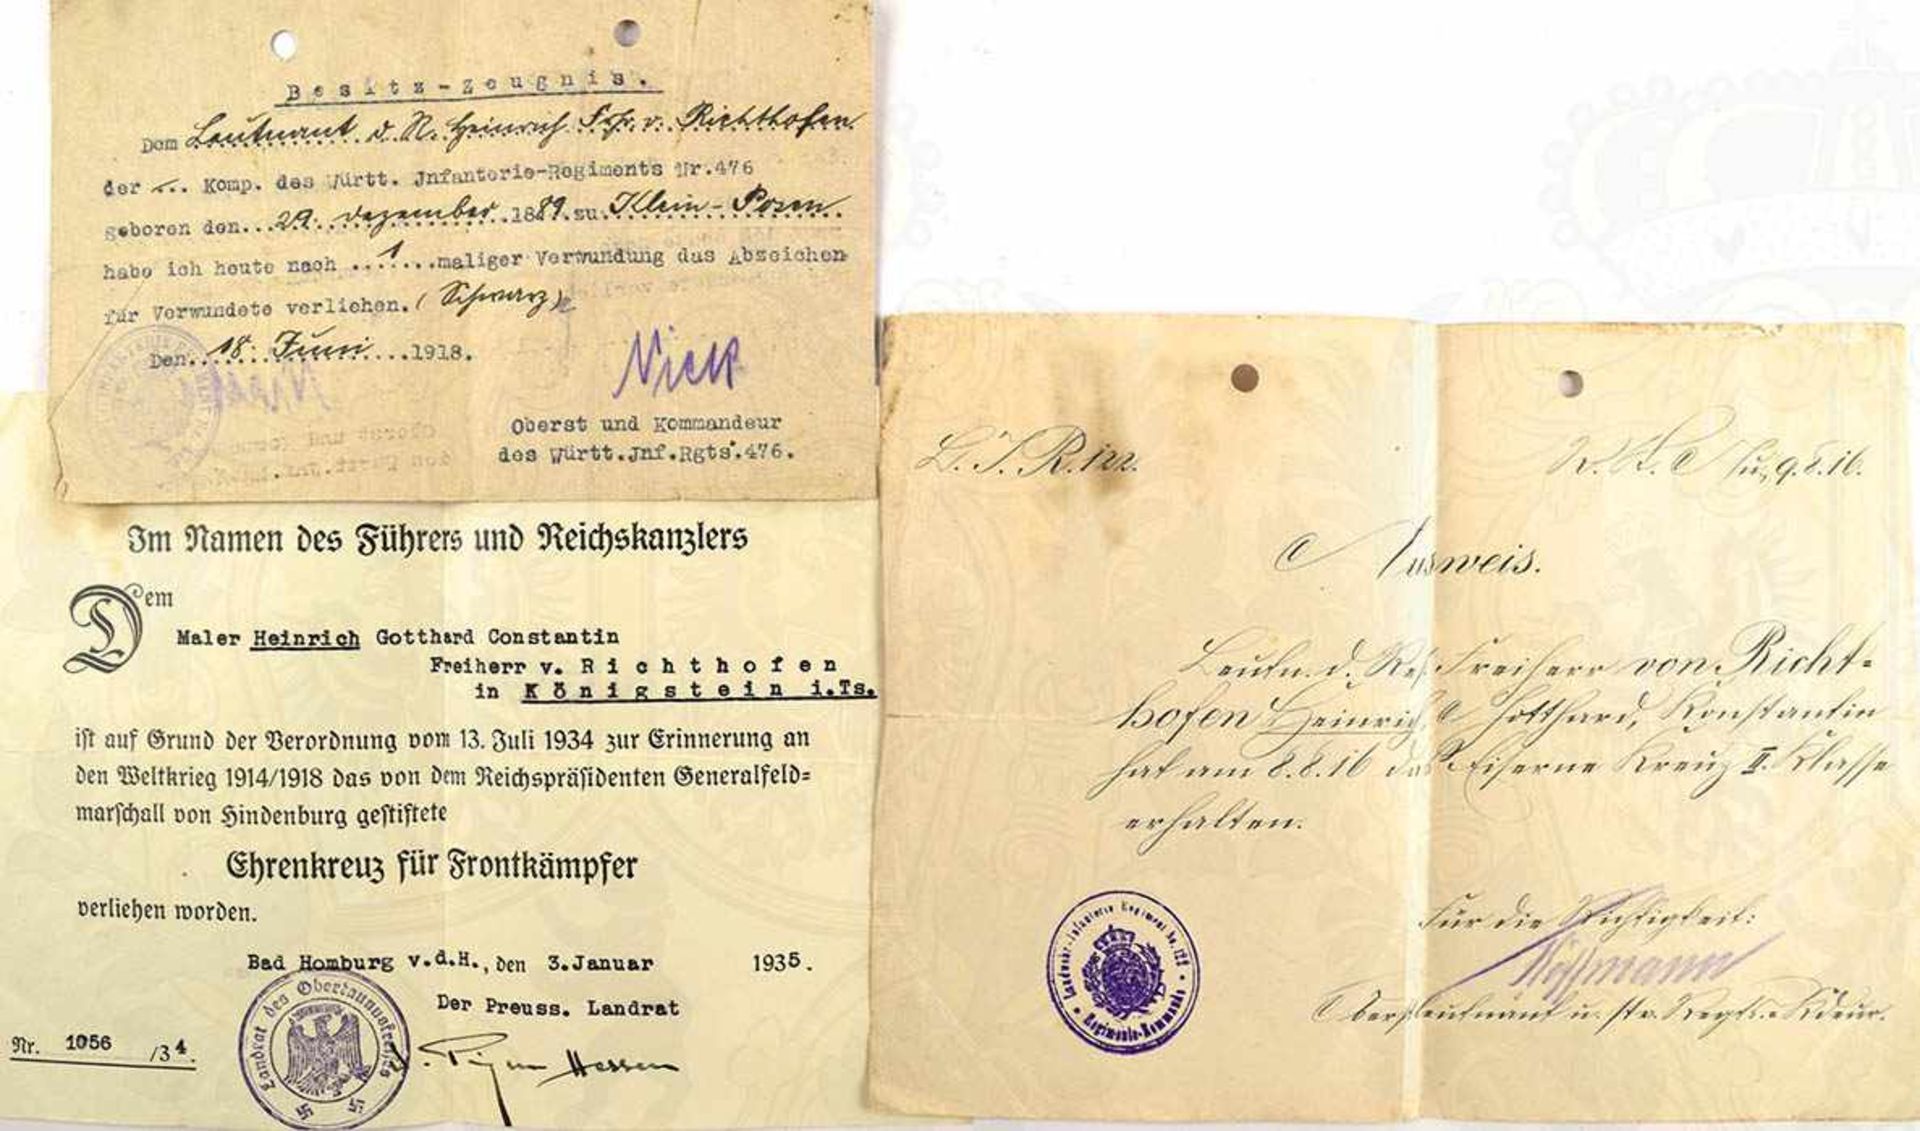 URKUNDENGRUPPE EINES LEUTNANTS DER RESERVE: Ausweis zum EK II 1914, Landwehr-Inf.-Rgt. 122, 1916, OU